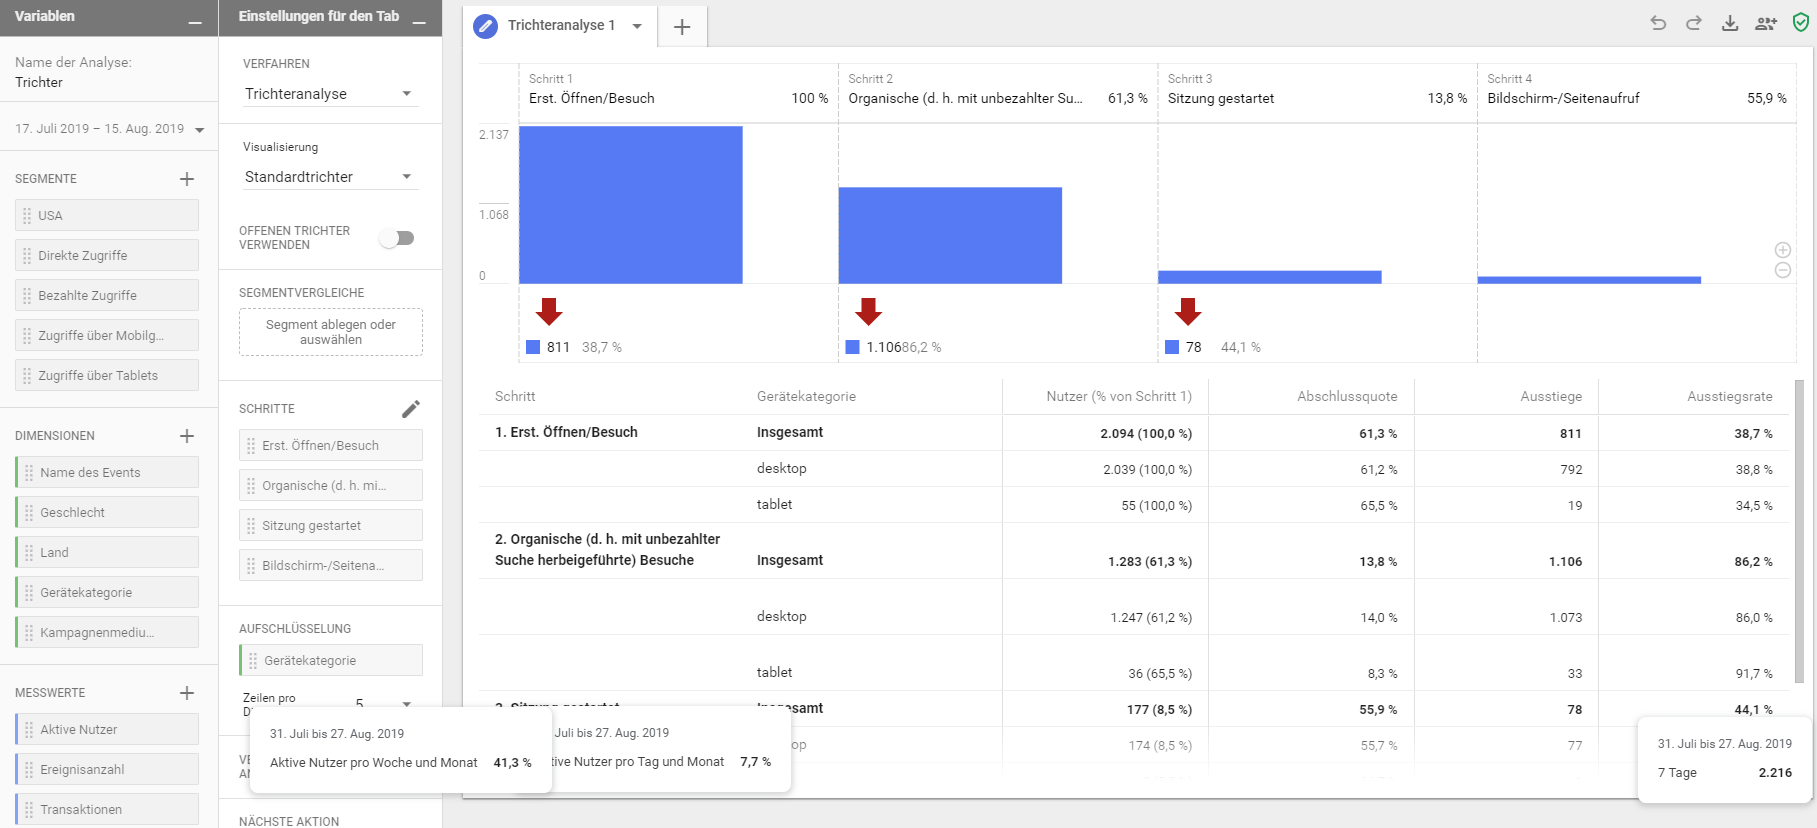 Screenshot von Google-Analytics